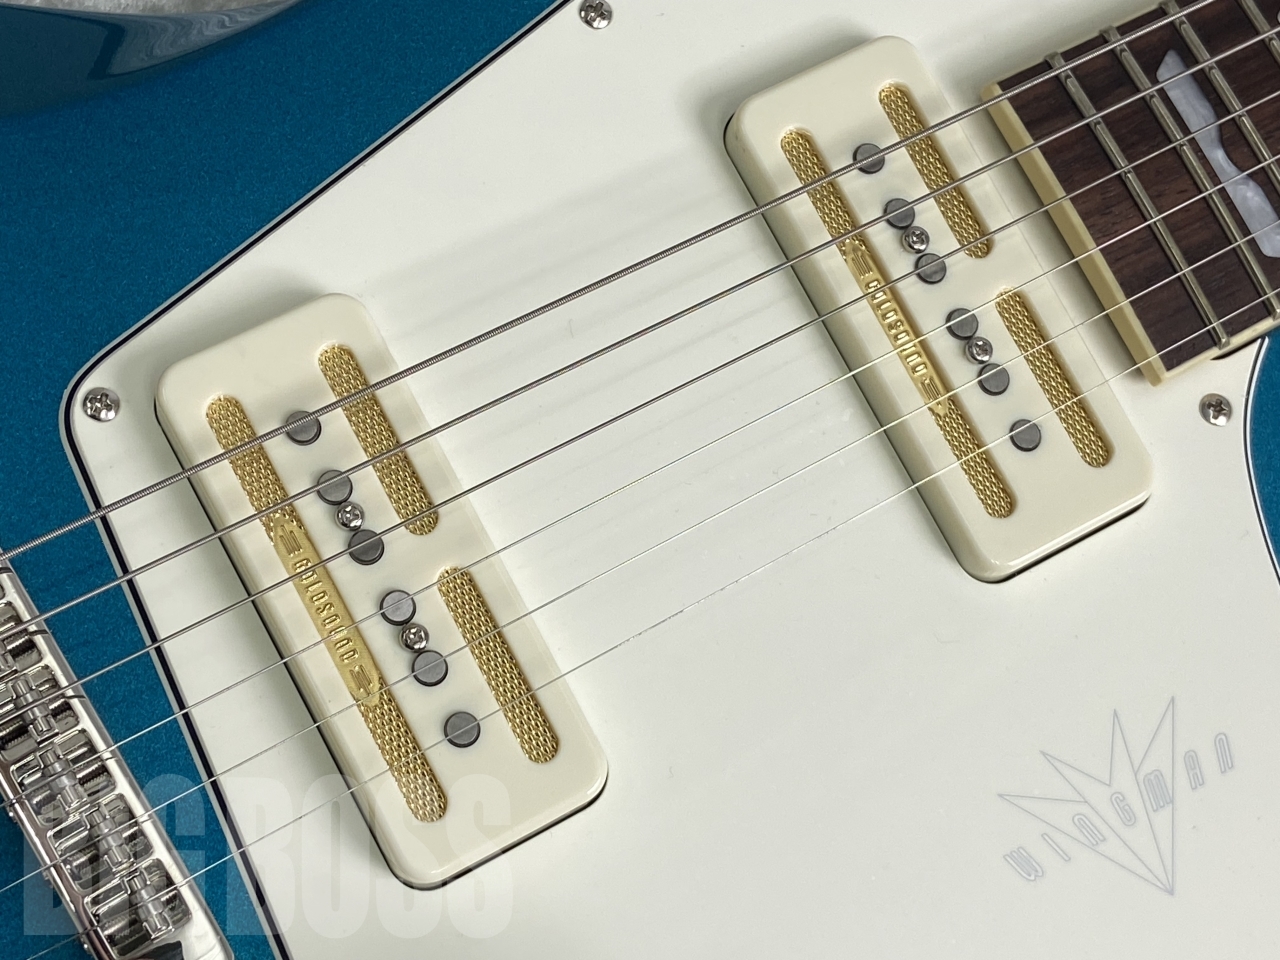 【即納可能】Baum Guitars(バウムギターズ) Wingman with Tremolo / Coral Blue お茶の水駅前店(東京)